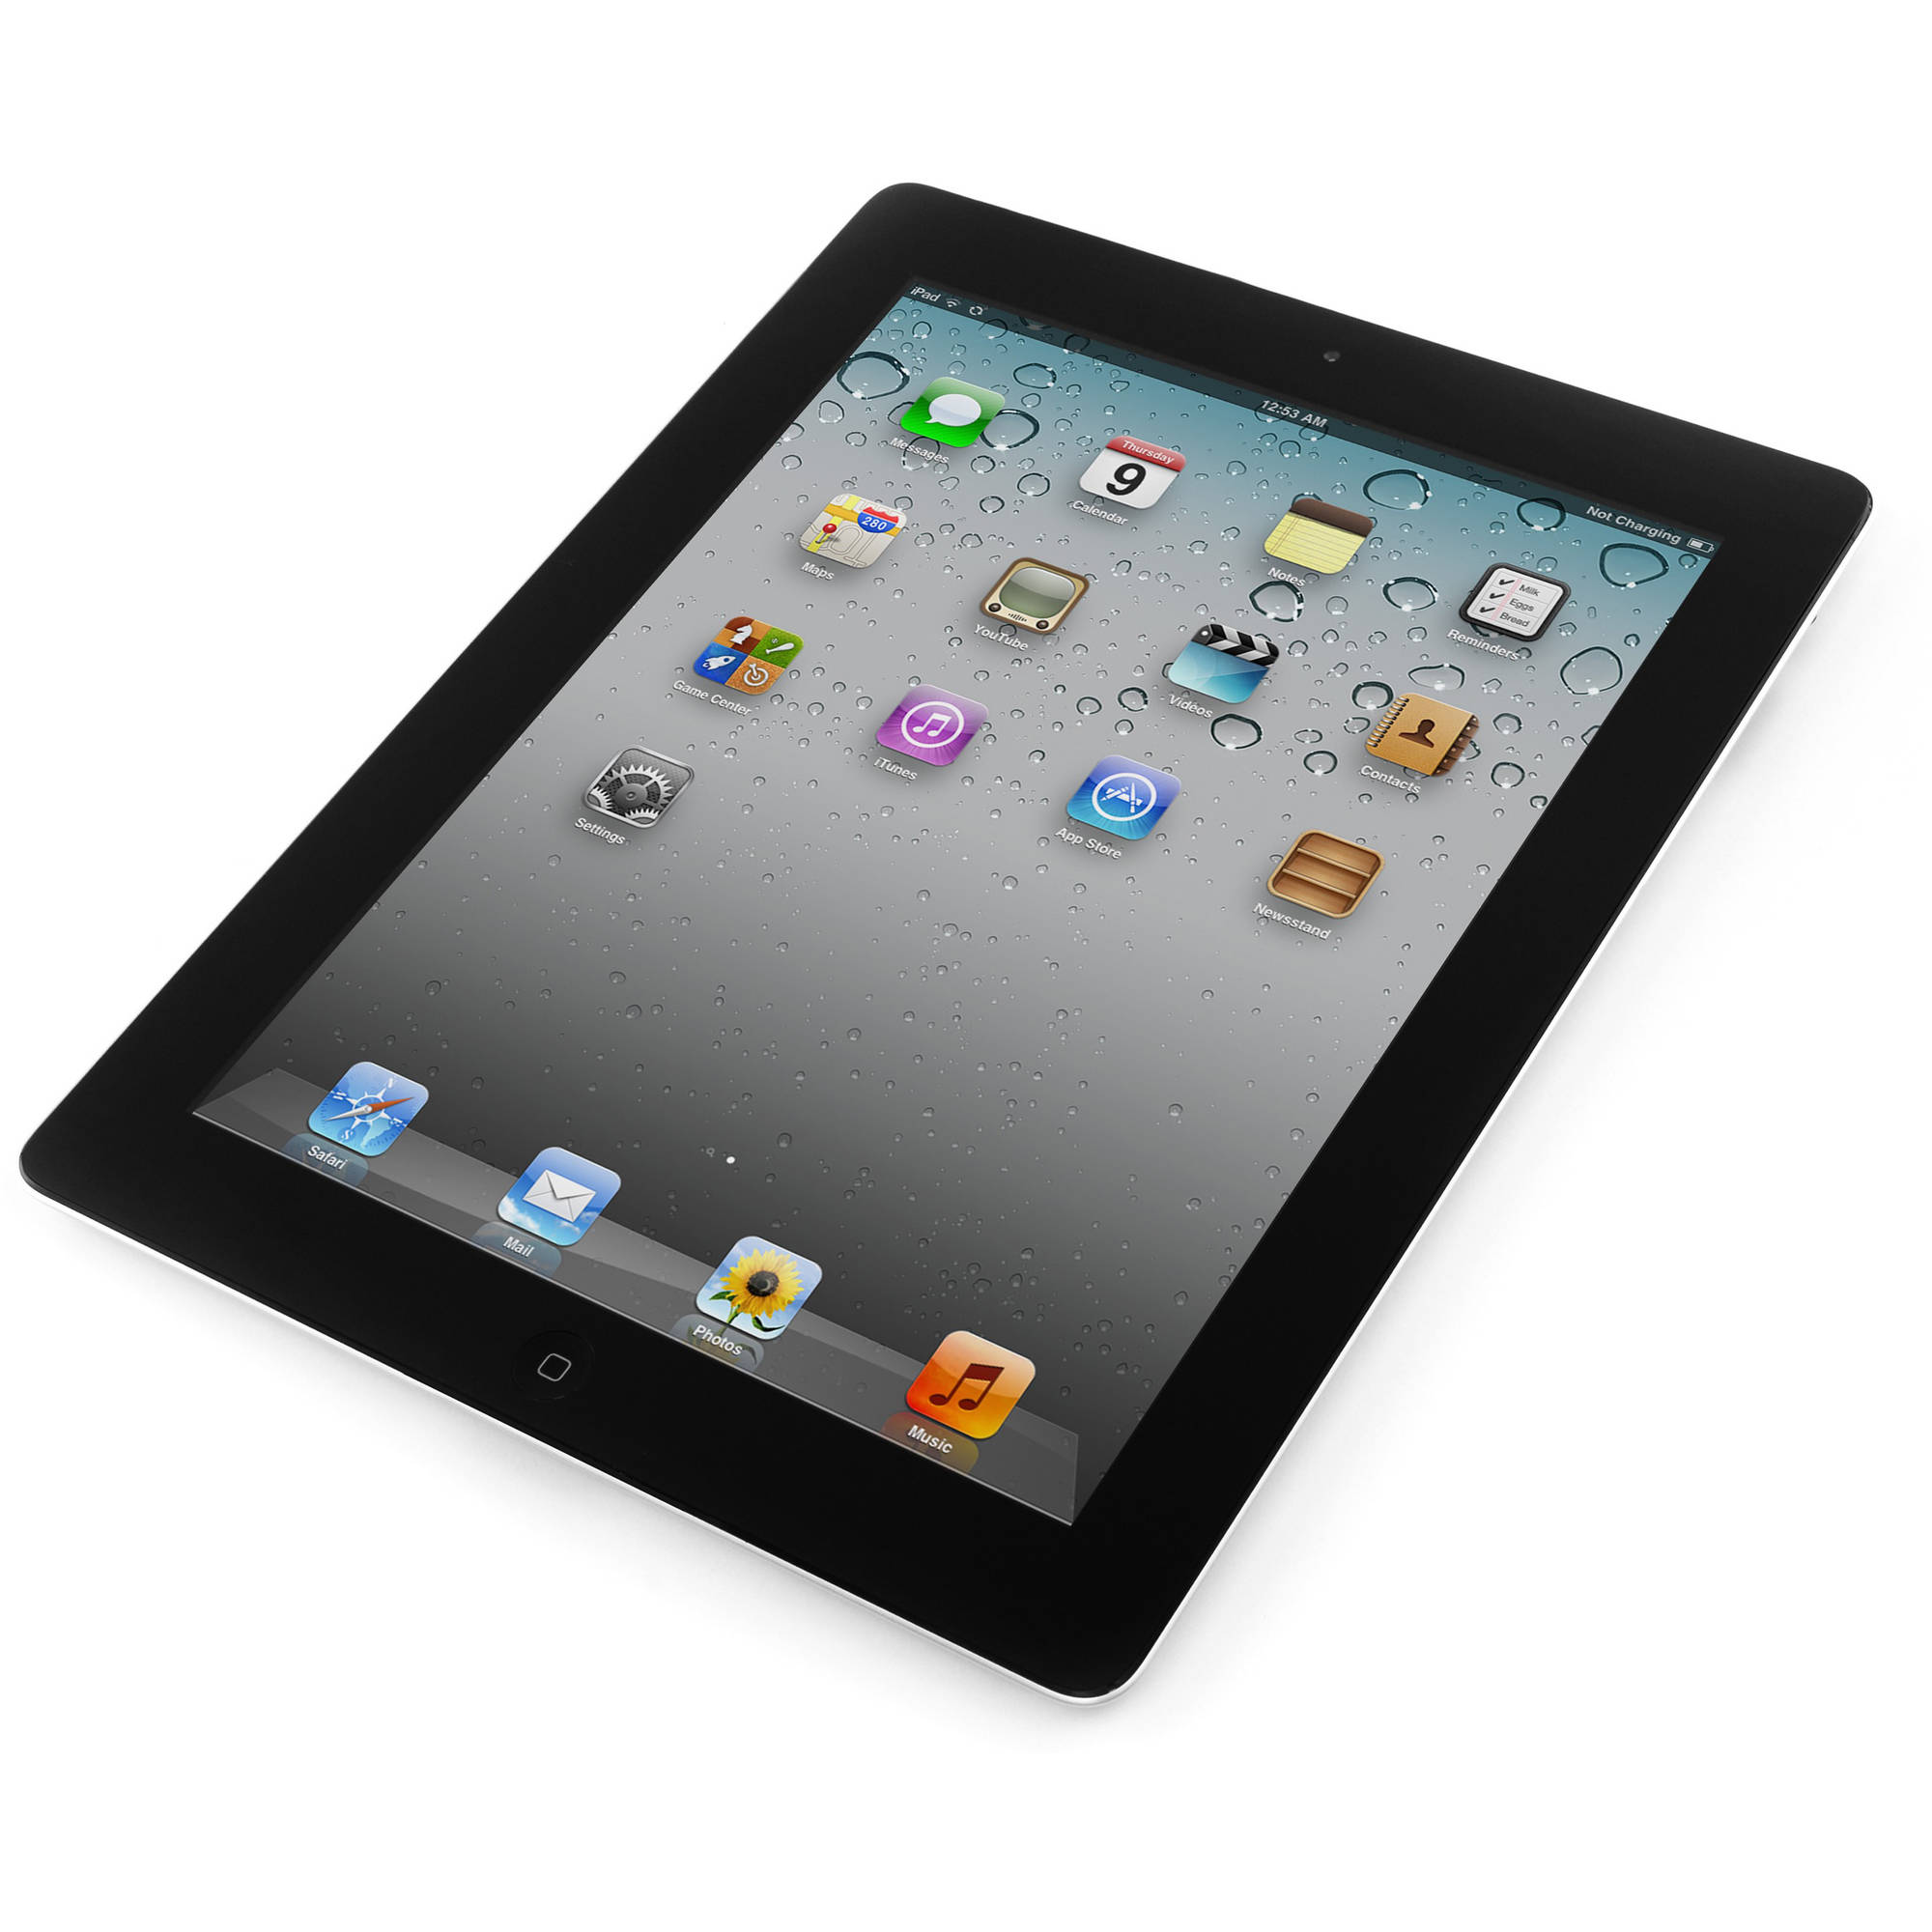 Restored Apple iPad 4 16GB Black Retina Display Wi-Fi MD510LL/A (Refurbished) - image 2 of 2